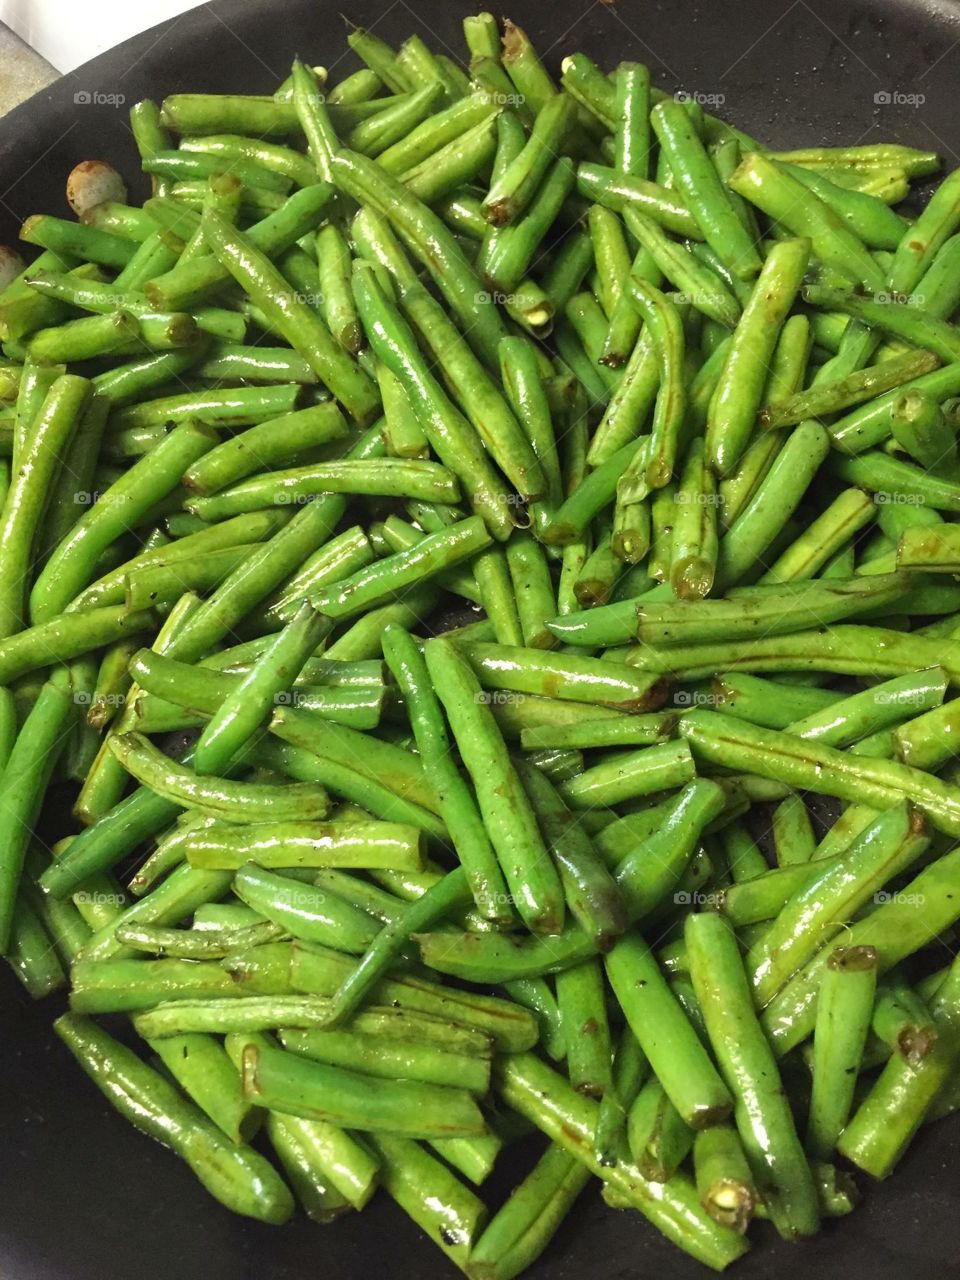 Fresh green beans from the garden 